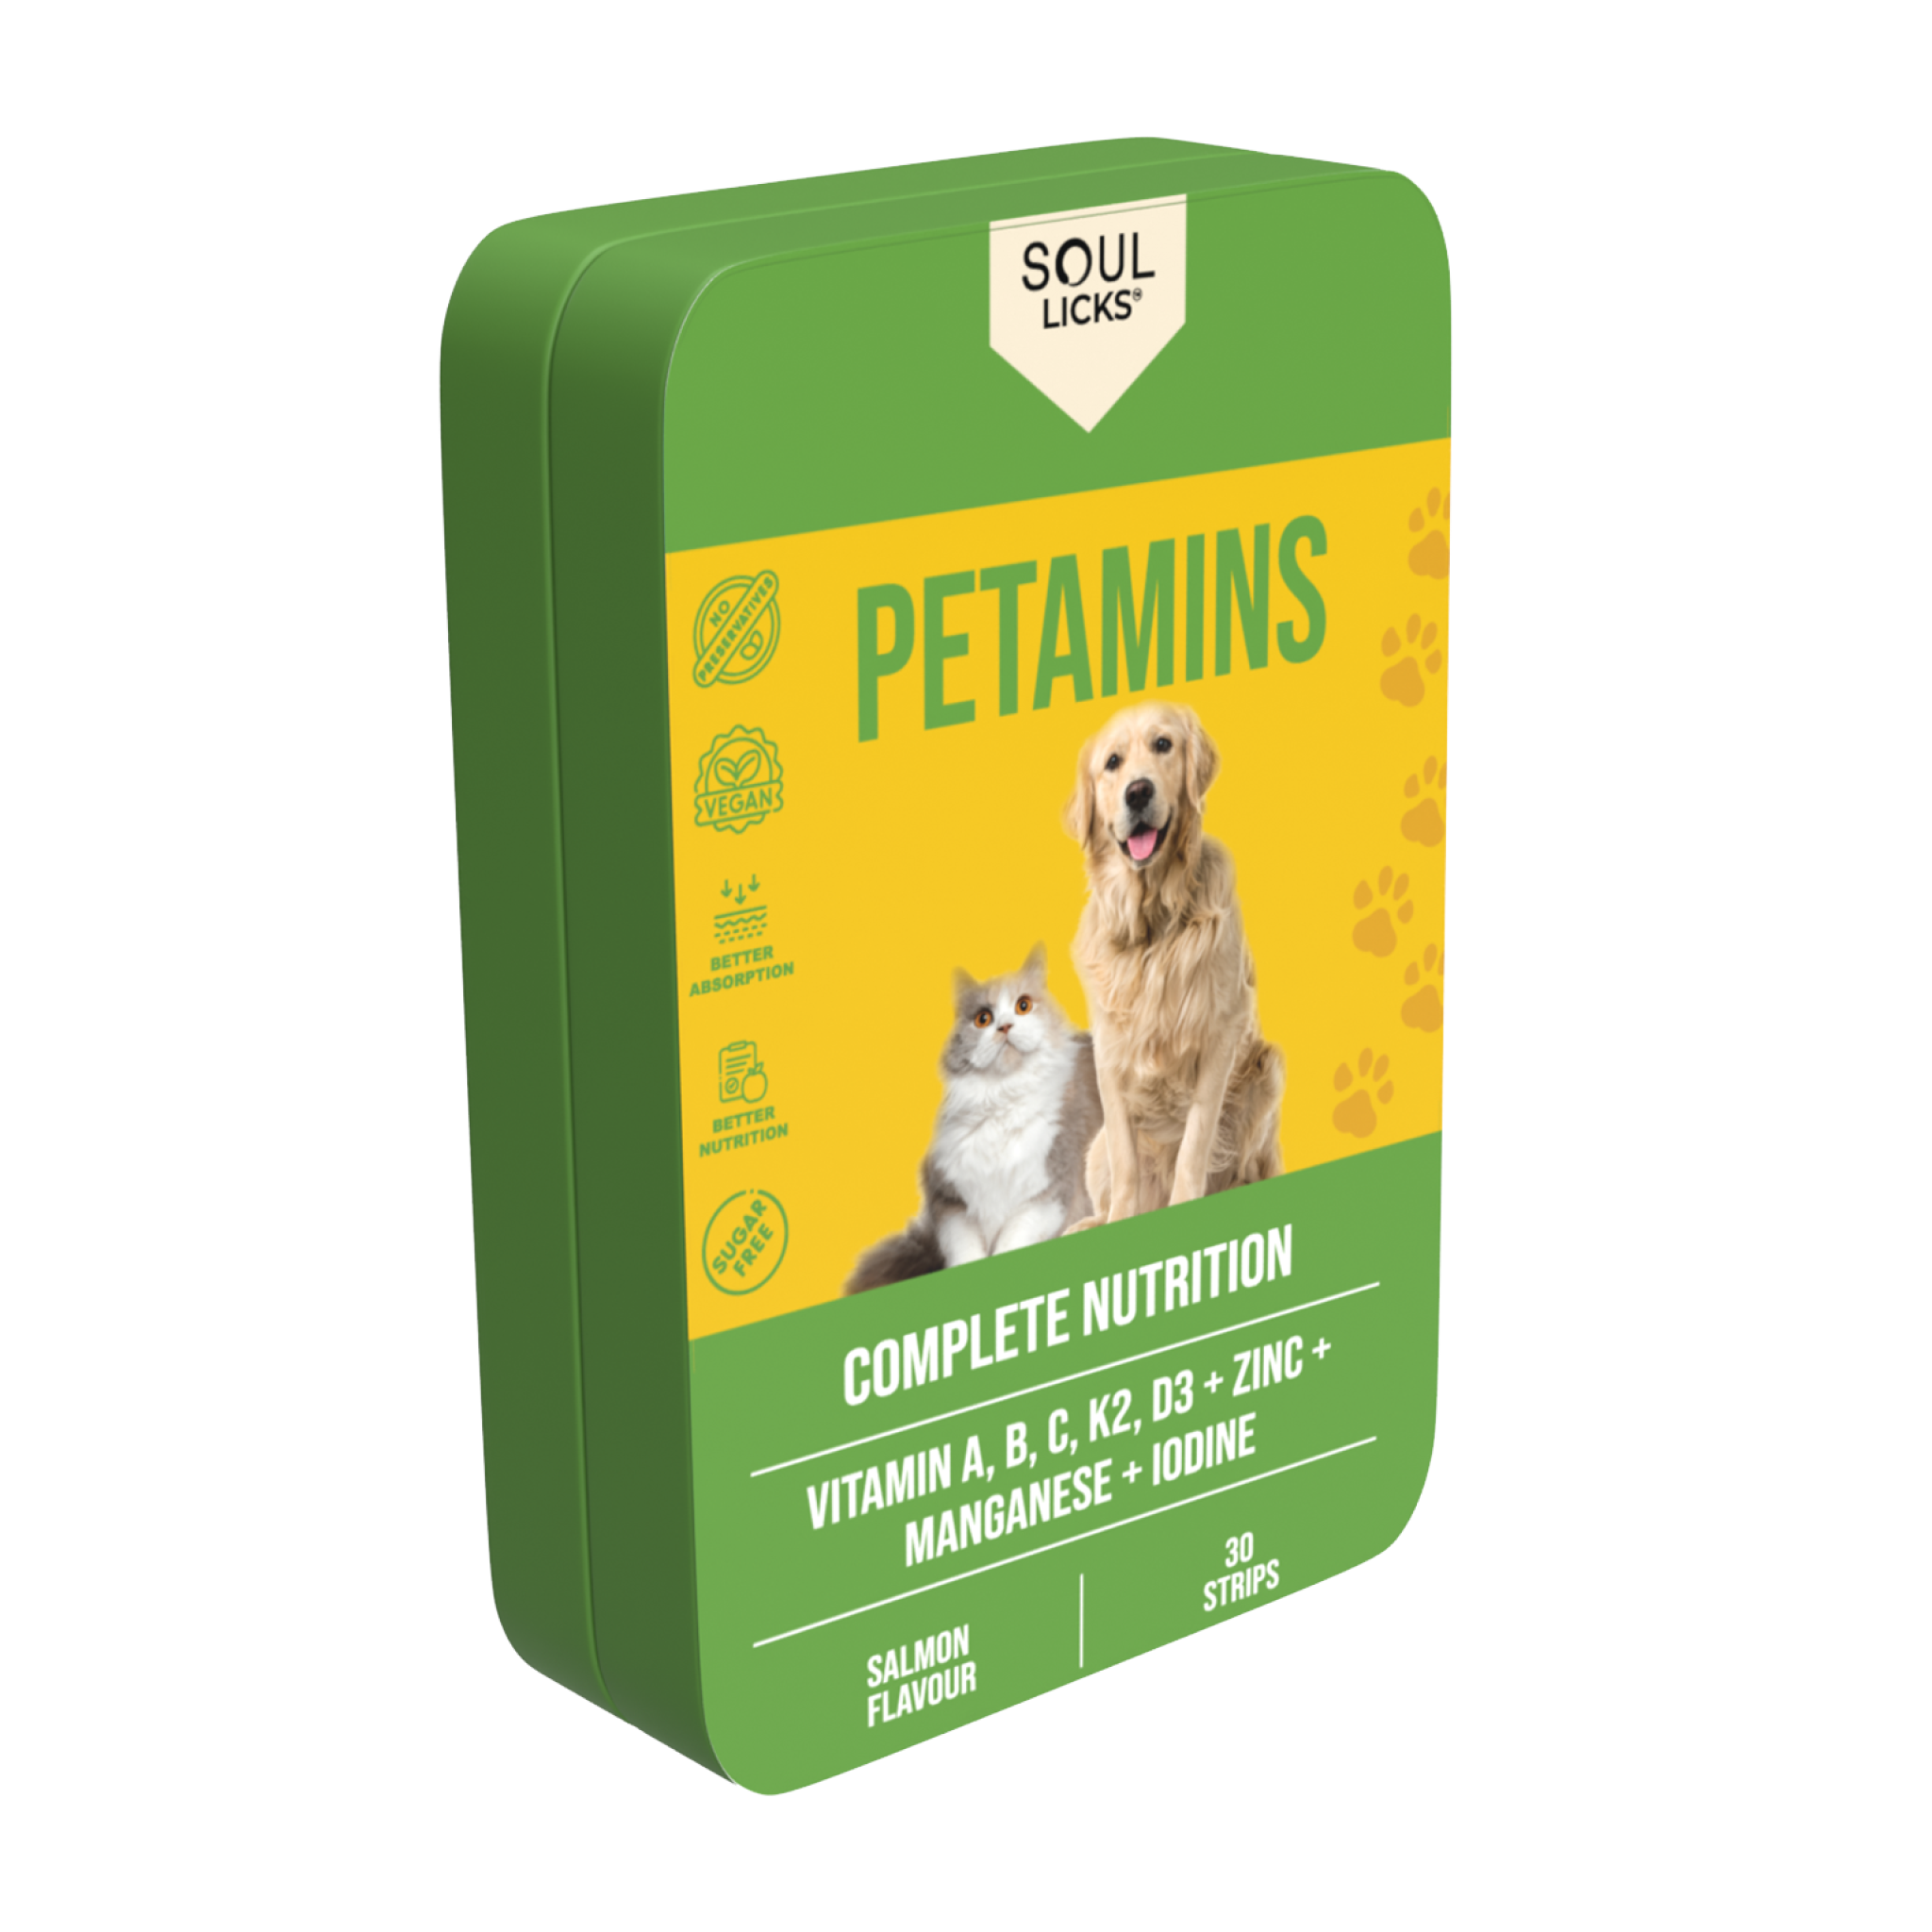 Petamins - All essential vitamins & minerals